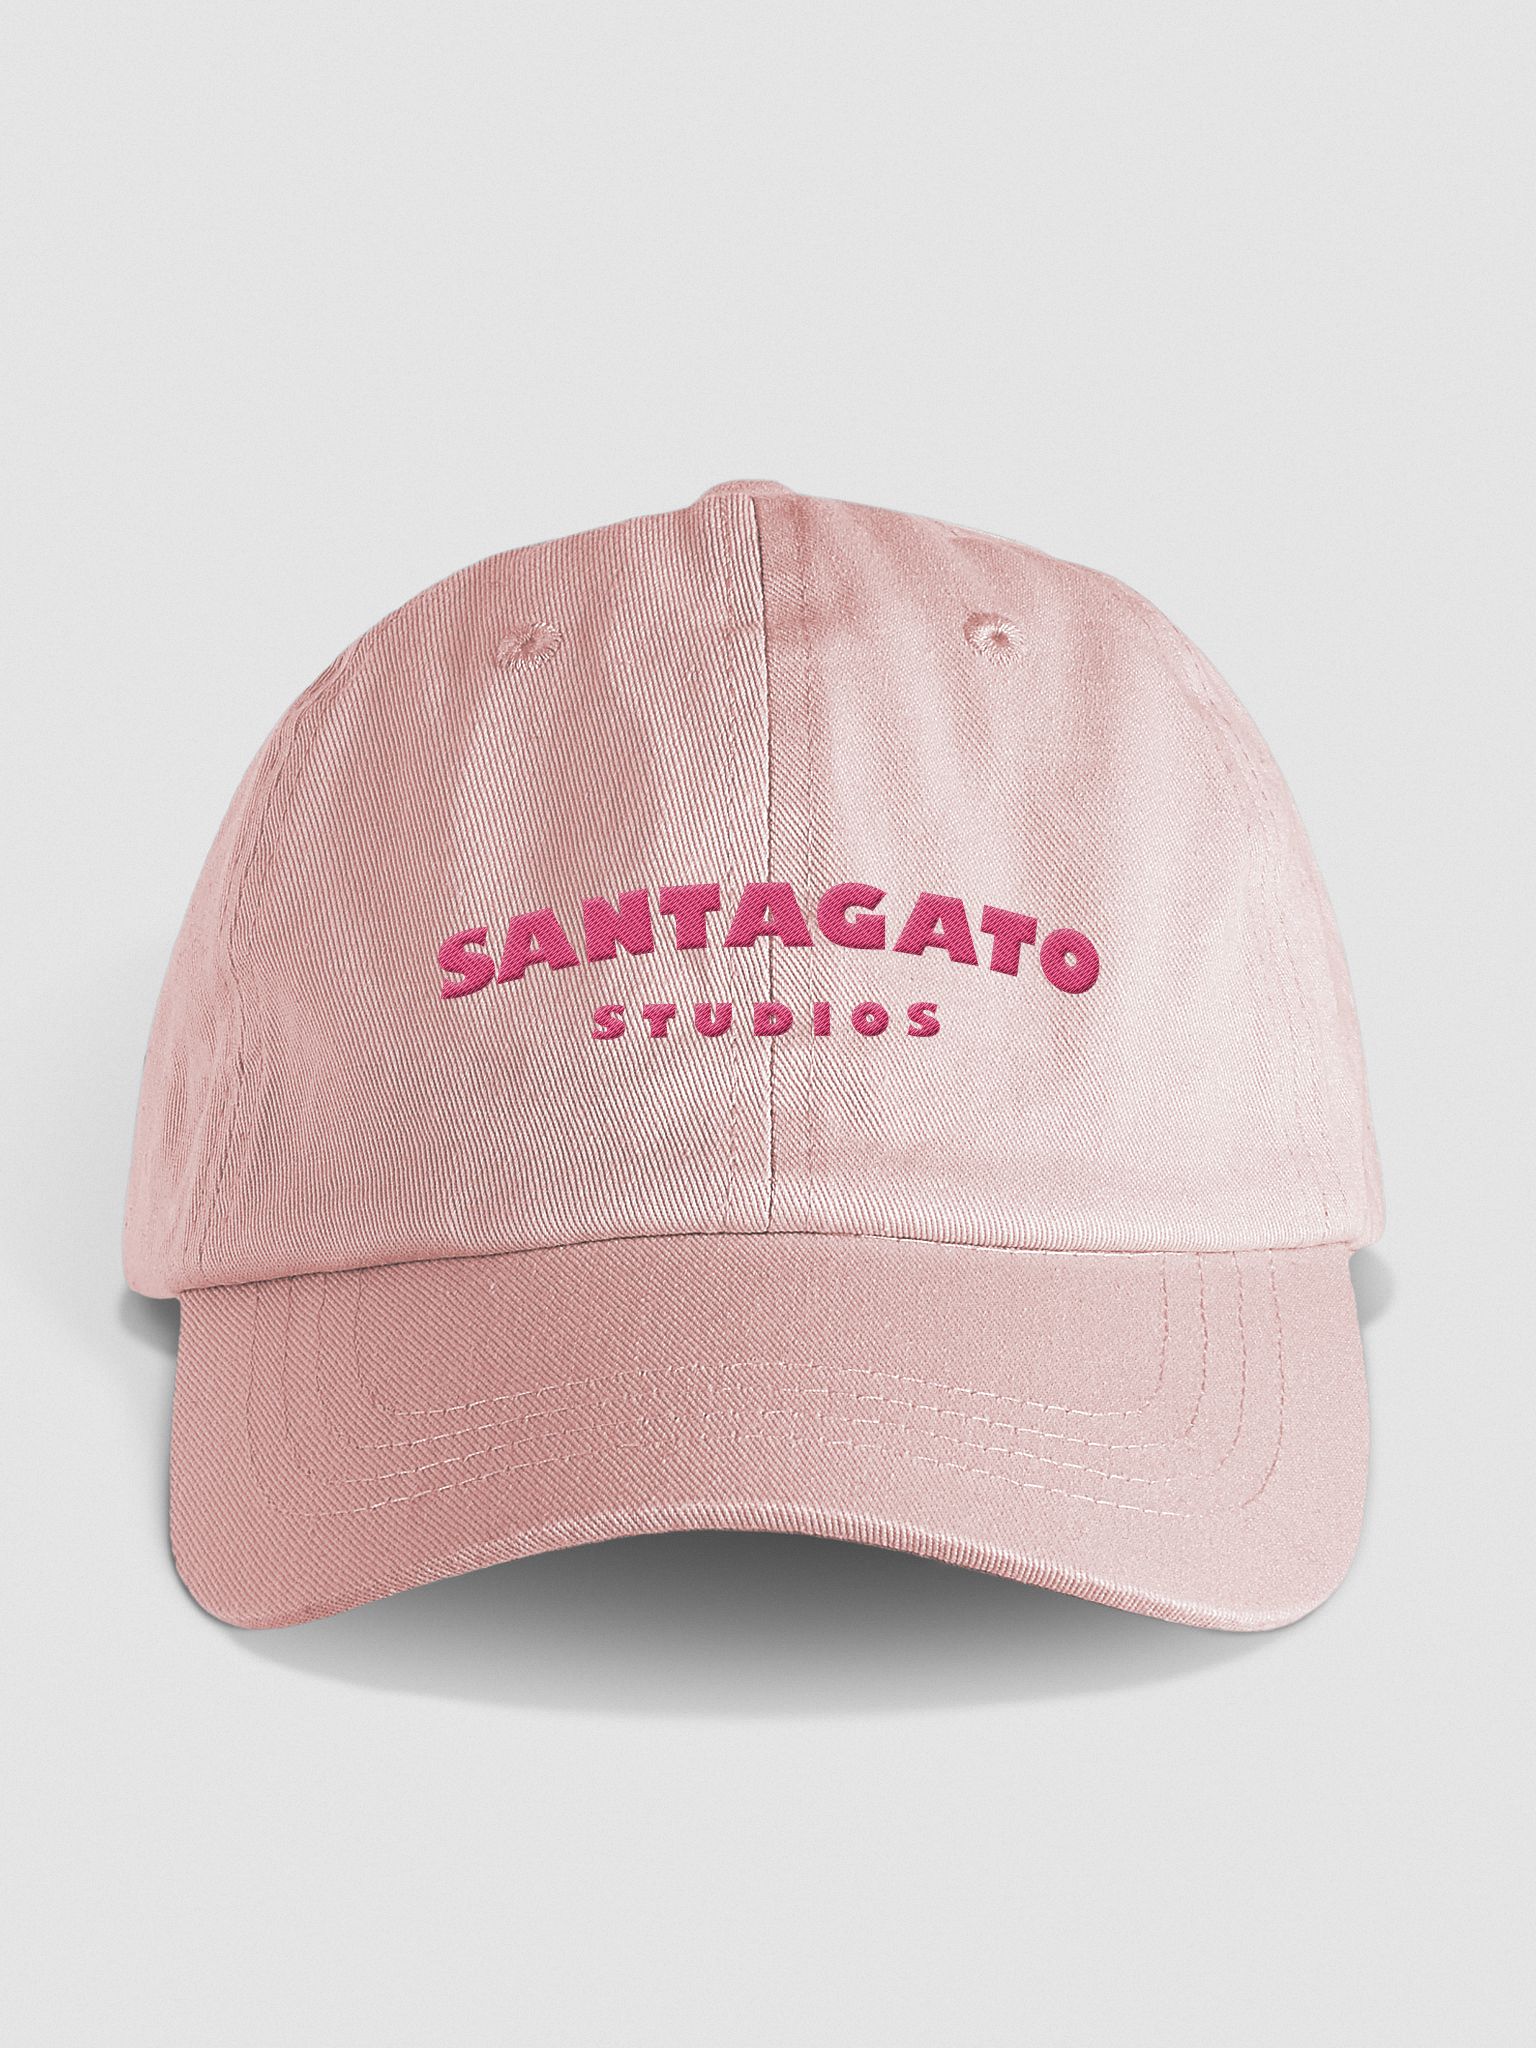 Joe Hat | Studios Santagato Santagato Pink Pastel